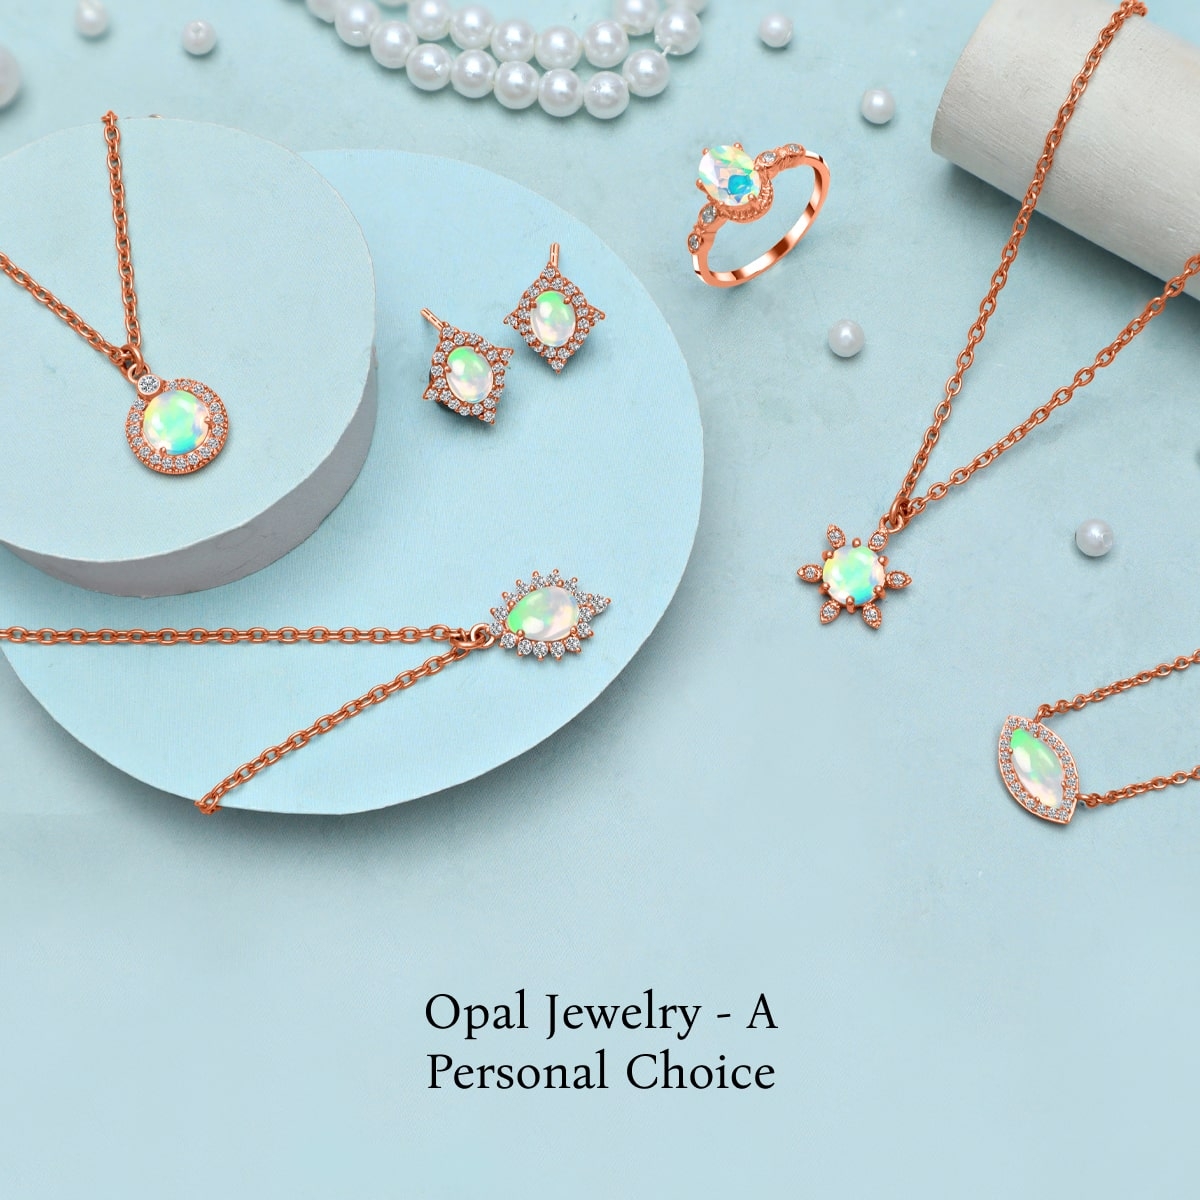 Who Should Wear an Opal stone